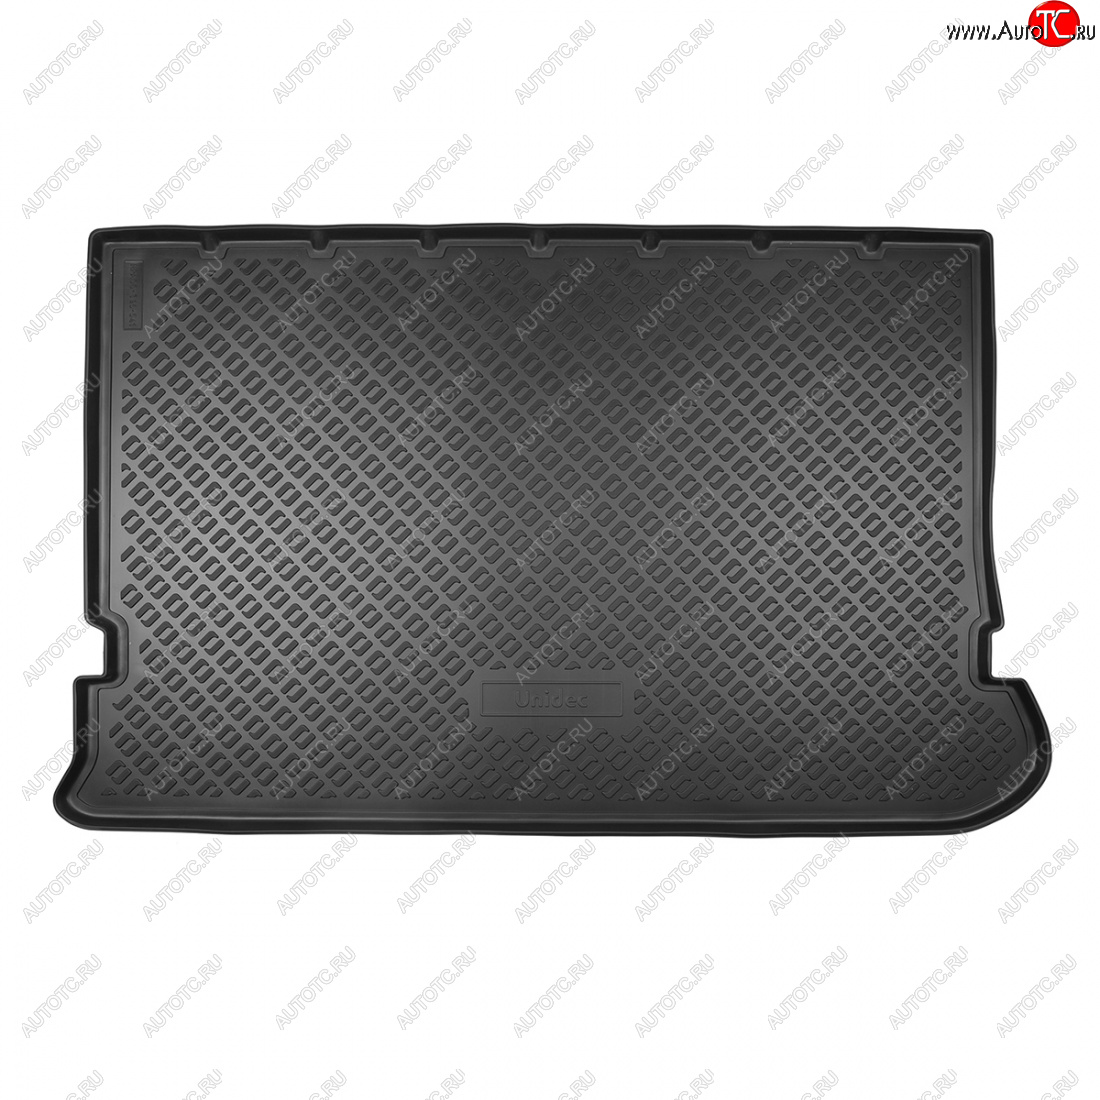 1 699 р. Коврик багажника Norplast Unidec (7 мест, разложенный 3 ряд)  Seat Alhambra  7M (1996-2010) (черный)